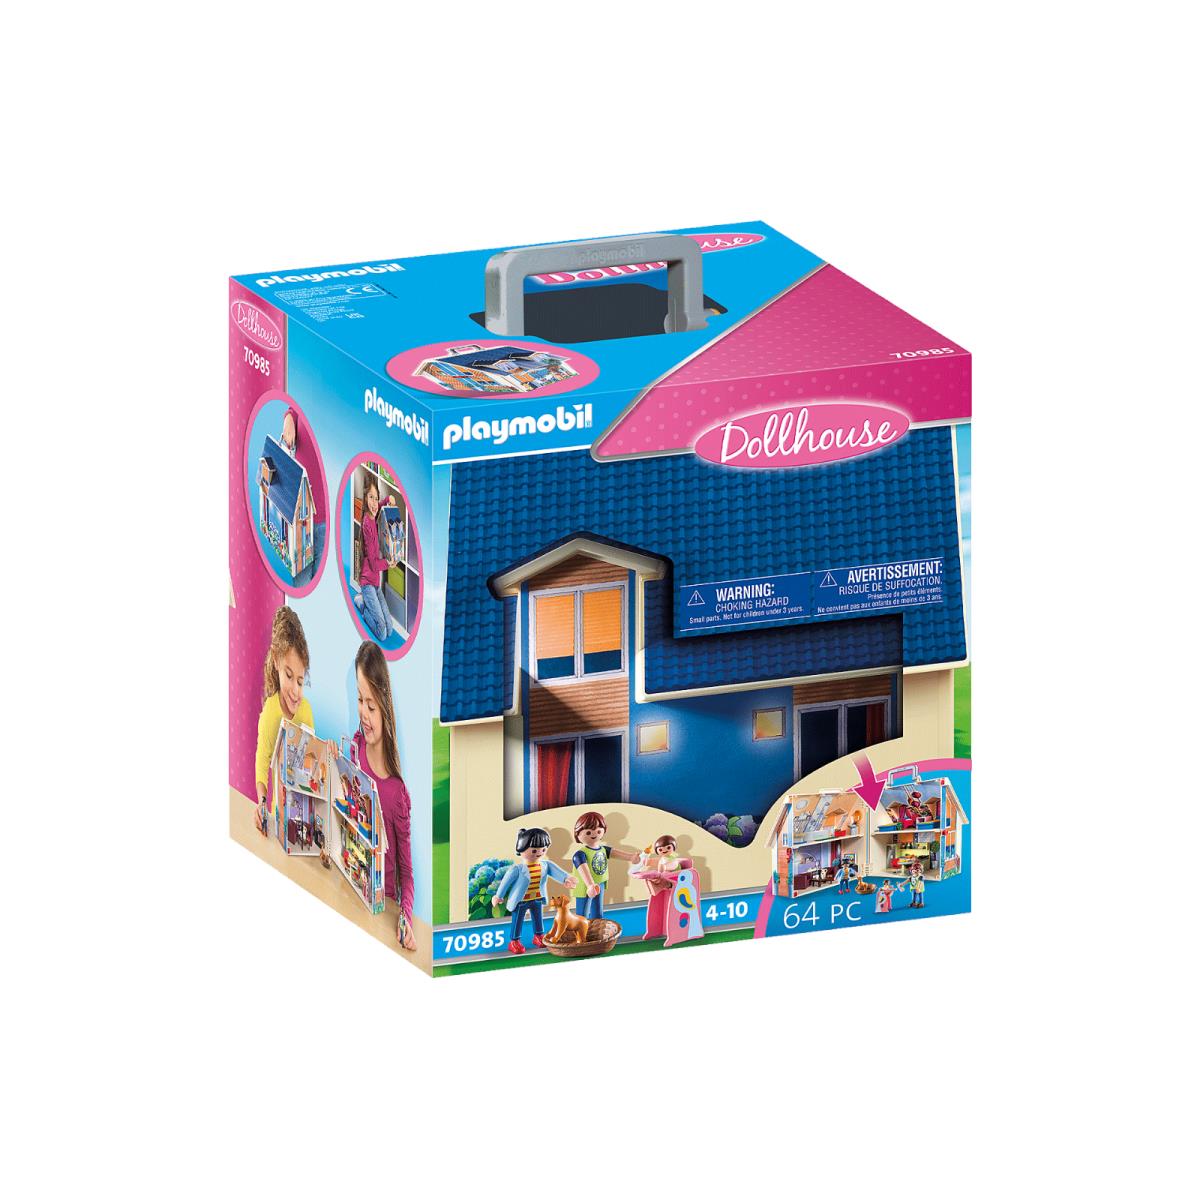 Playmobil 70985 Take Along Modern Dollhouse Mib/new